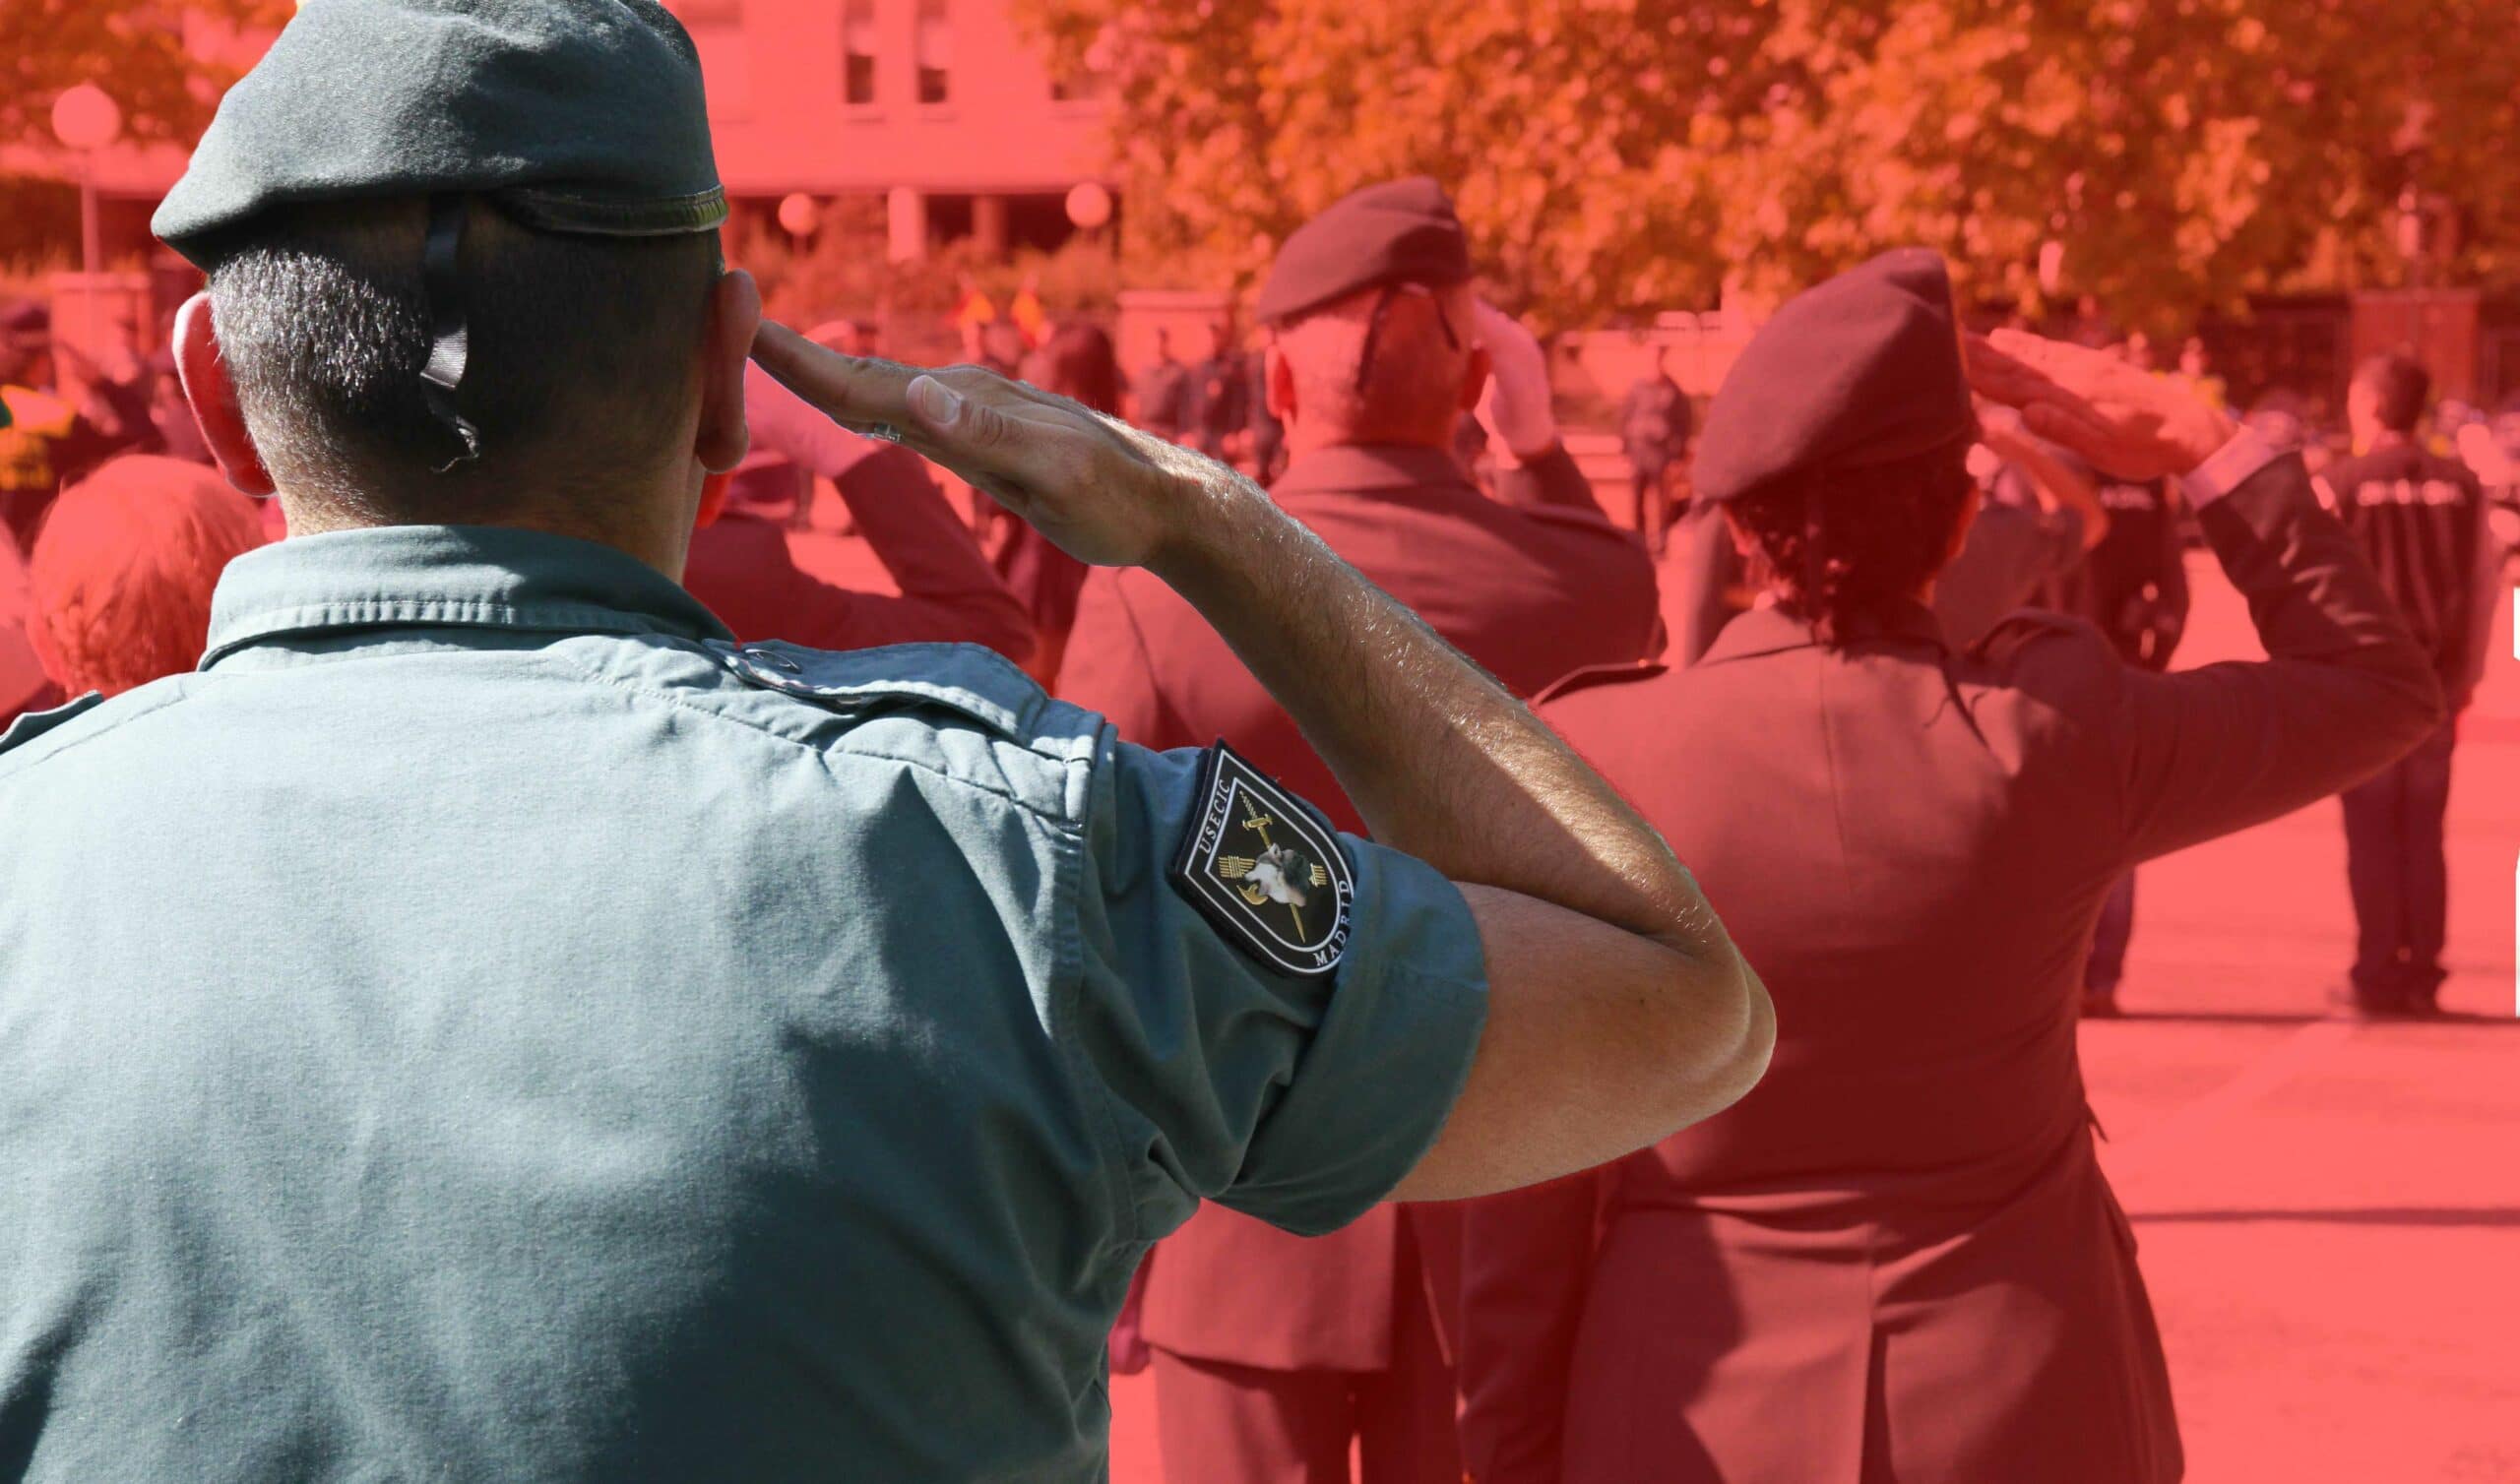 La Justicia militar sanciona con 9 meses de suspensión de empleo a un guardia civil de Alsasua por varias faltas graves